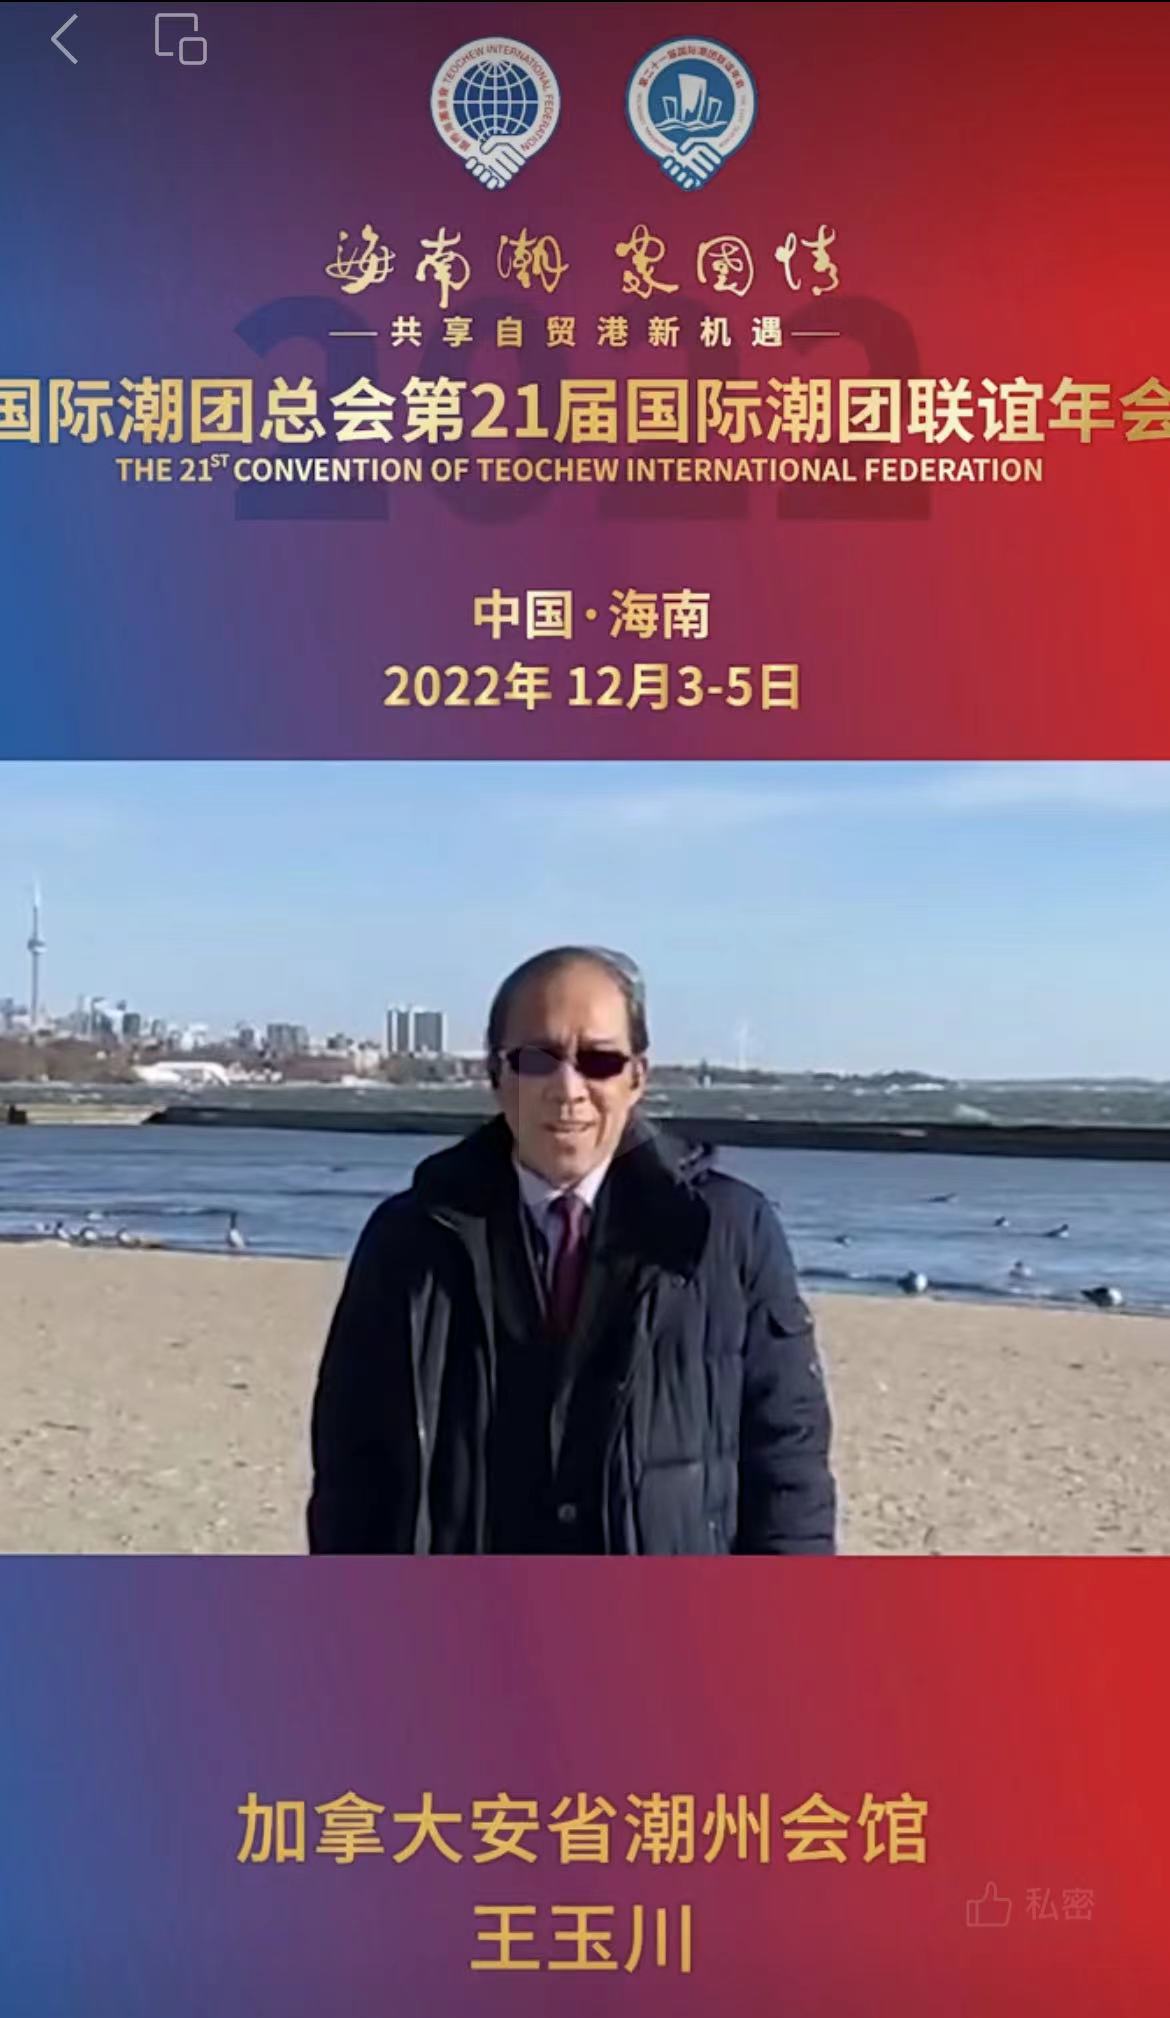 加拿大安省潮州会馆会长王玉川发来祝贺视频，为第21届国际潮团联谊年会加油助力